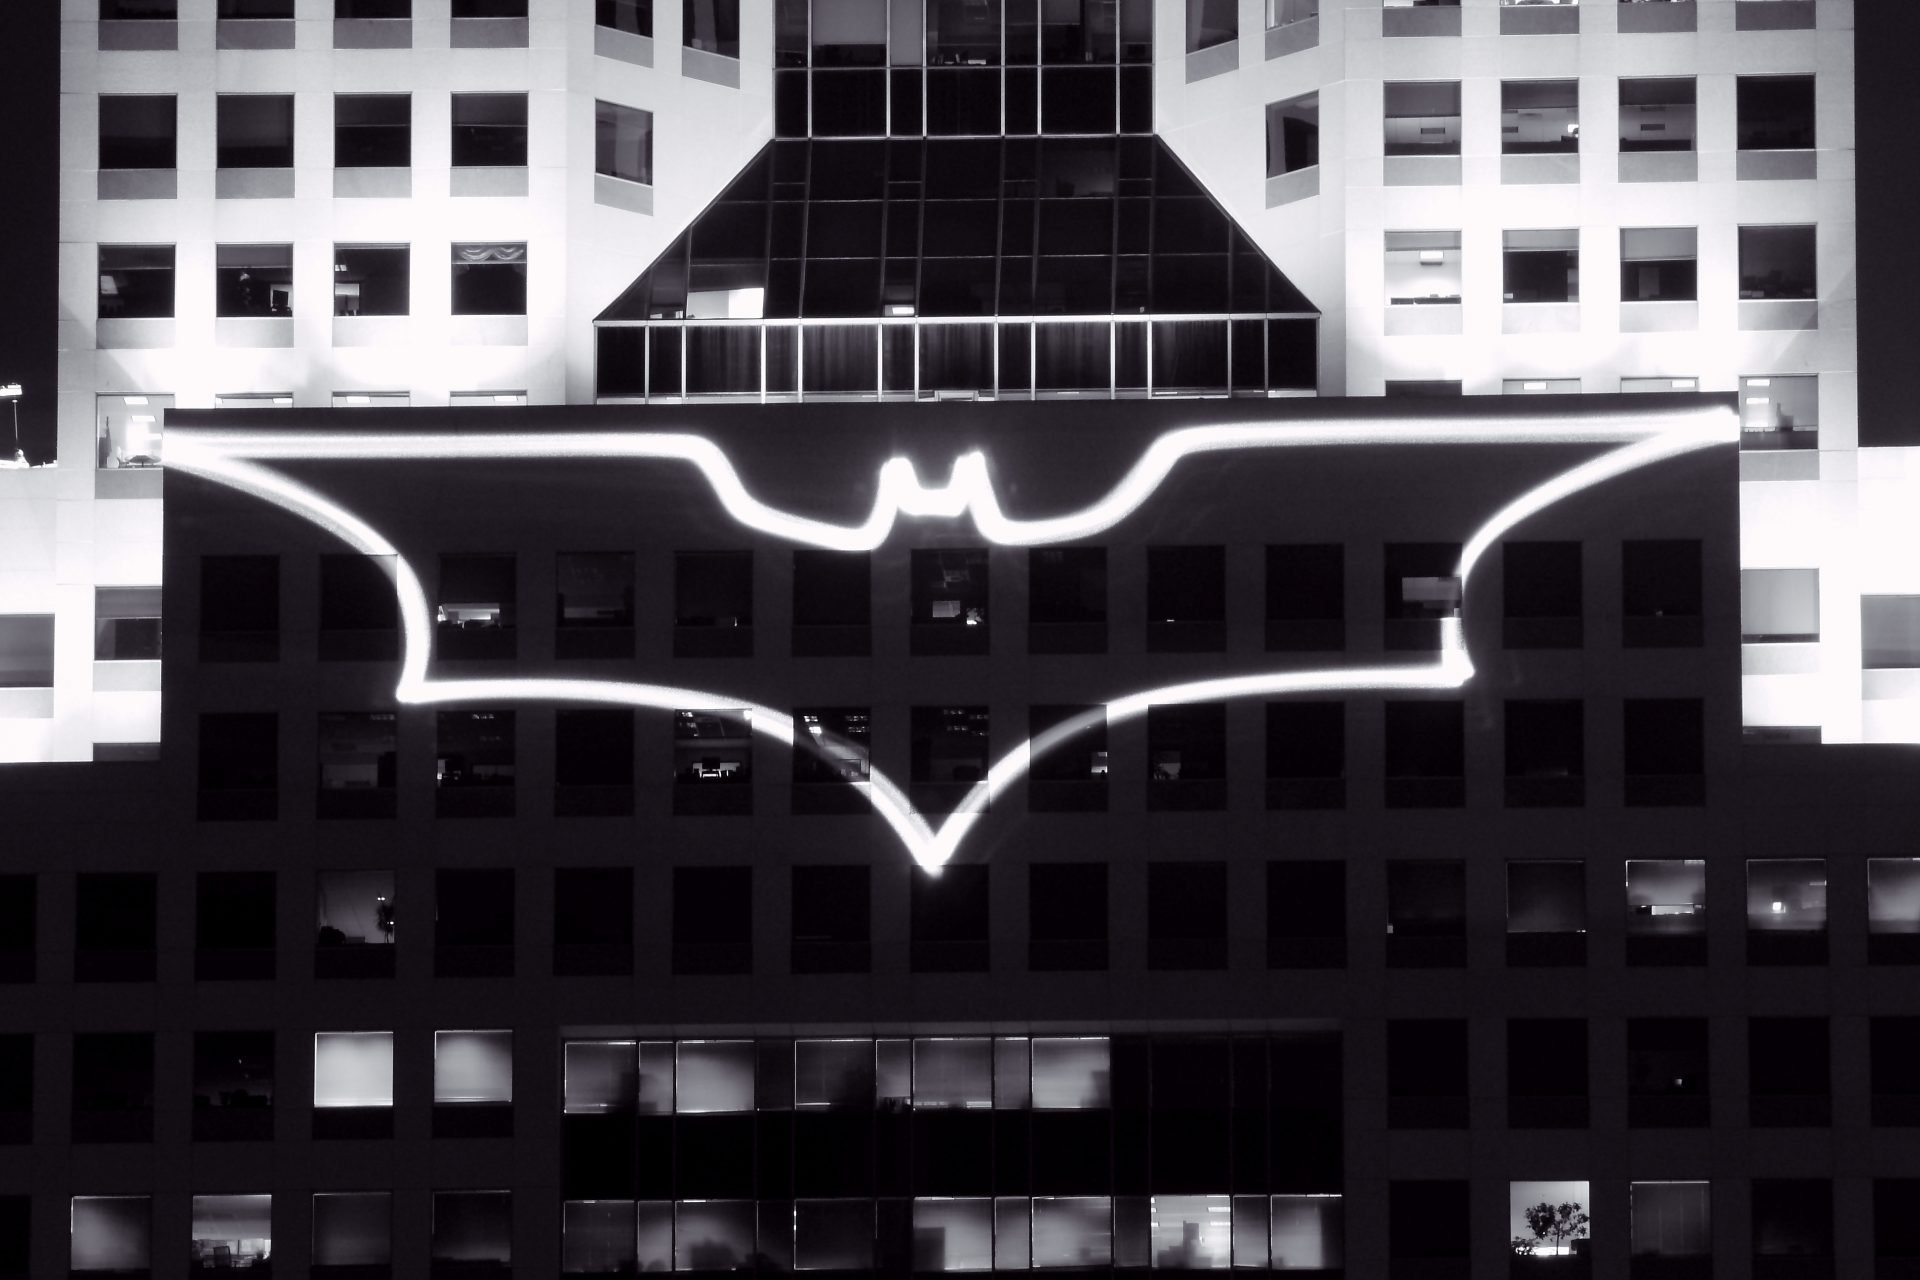 Batman symbol projected onto building